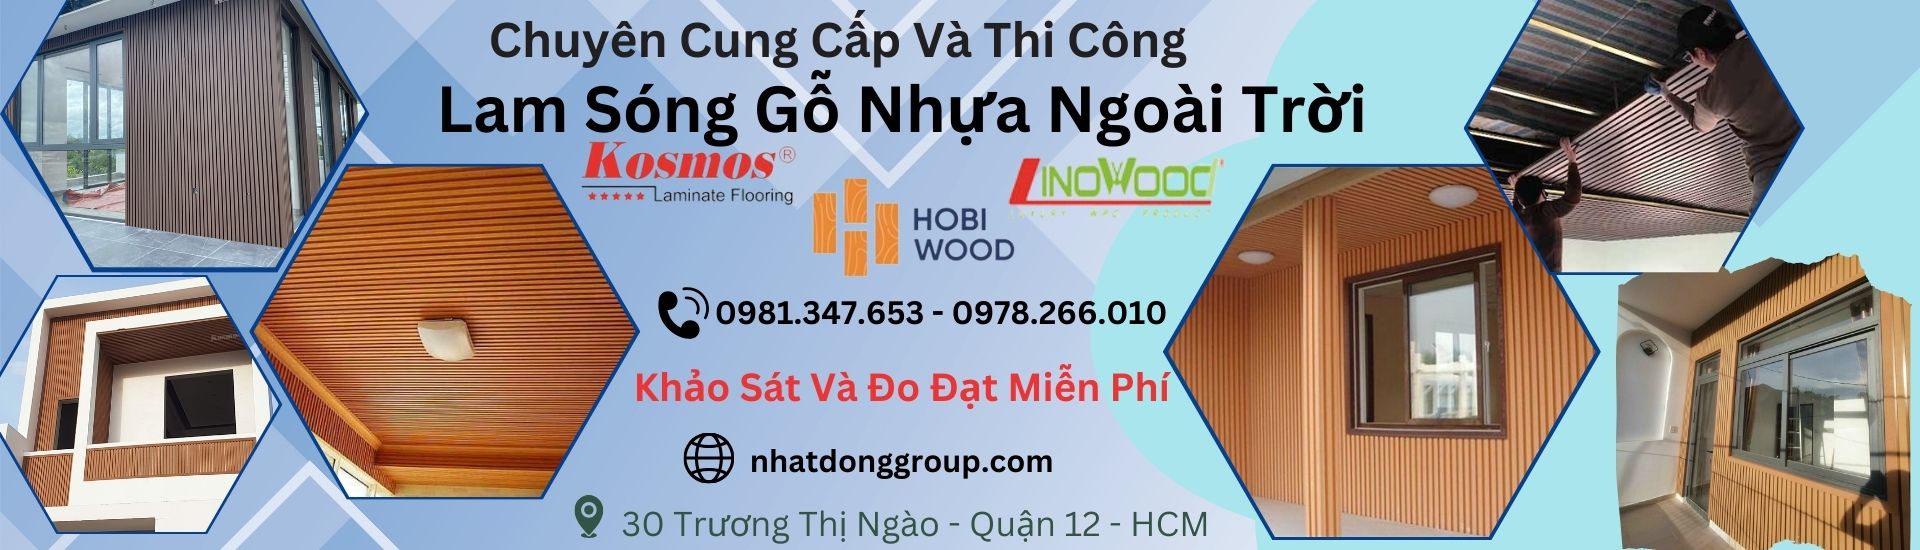 Tấm ốp lam sóng gỗ nhựa ngoài trời đẹp, chính hãng Tại Hồ Chí Minh,Long An , Bình Dương, Đồng Nai, Cần Thơ, Bạc Liêu